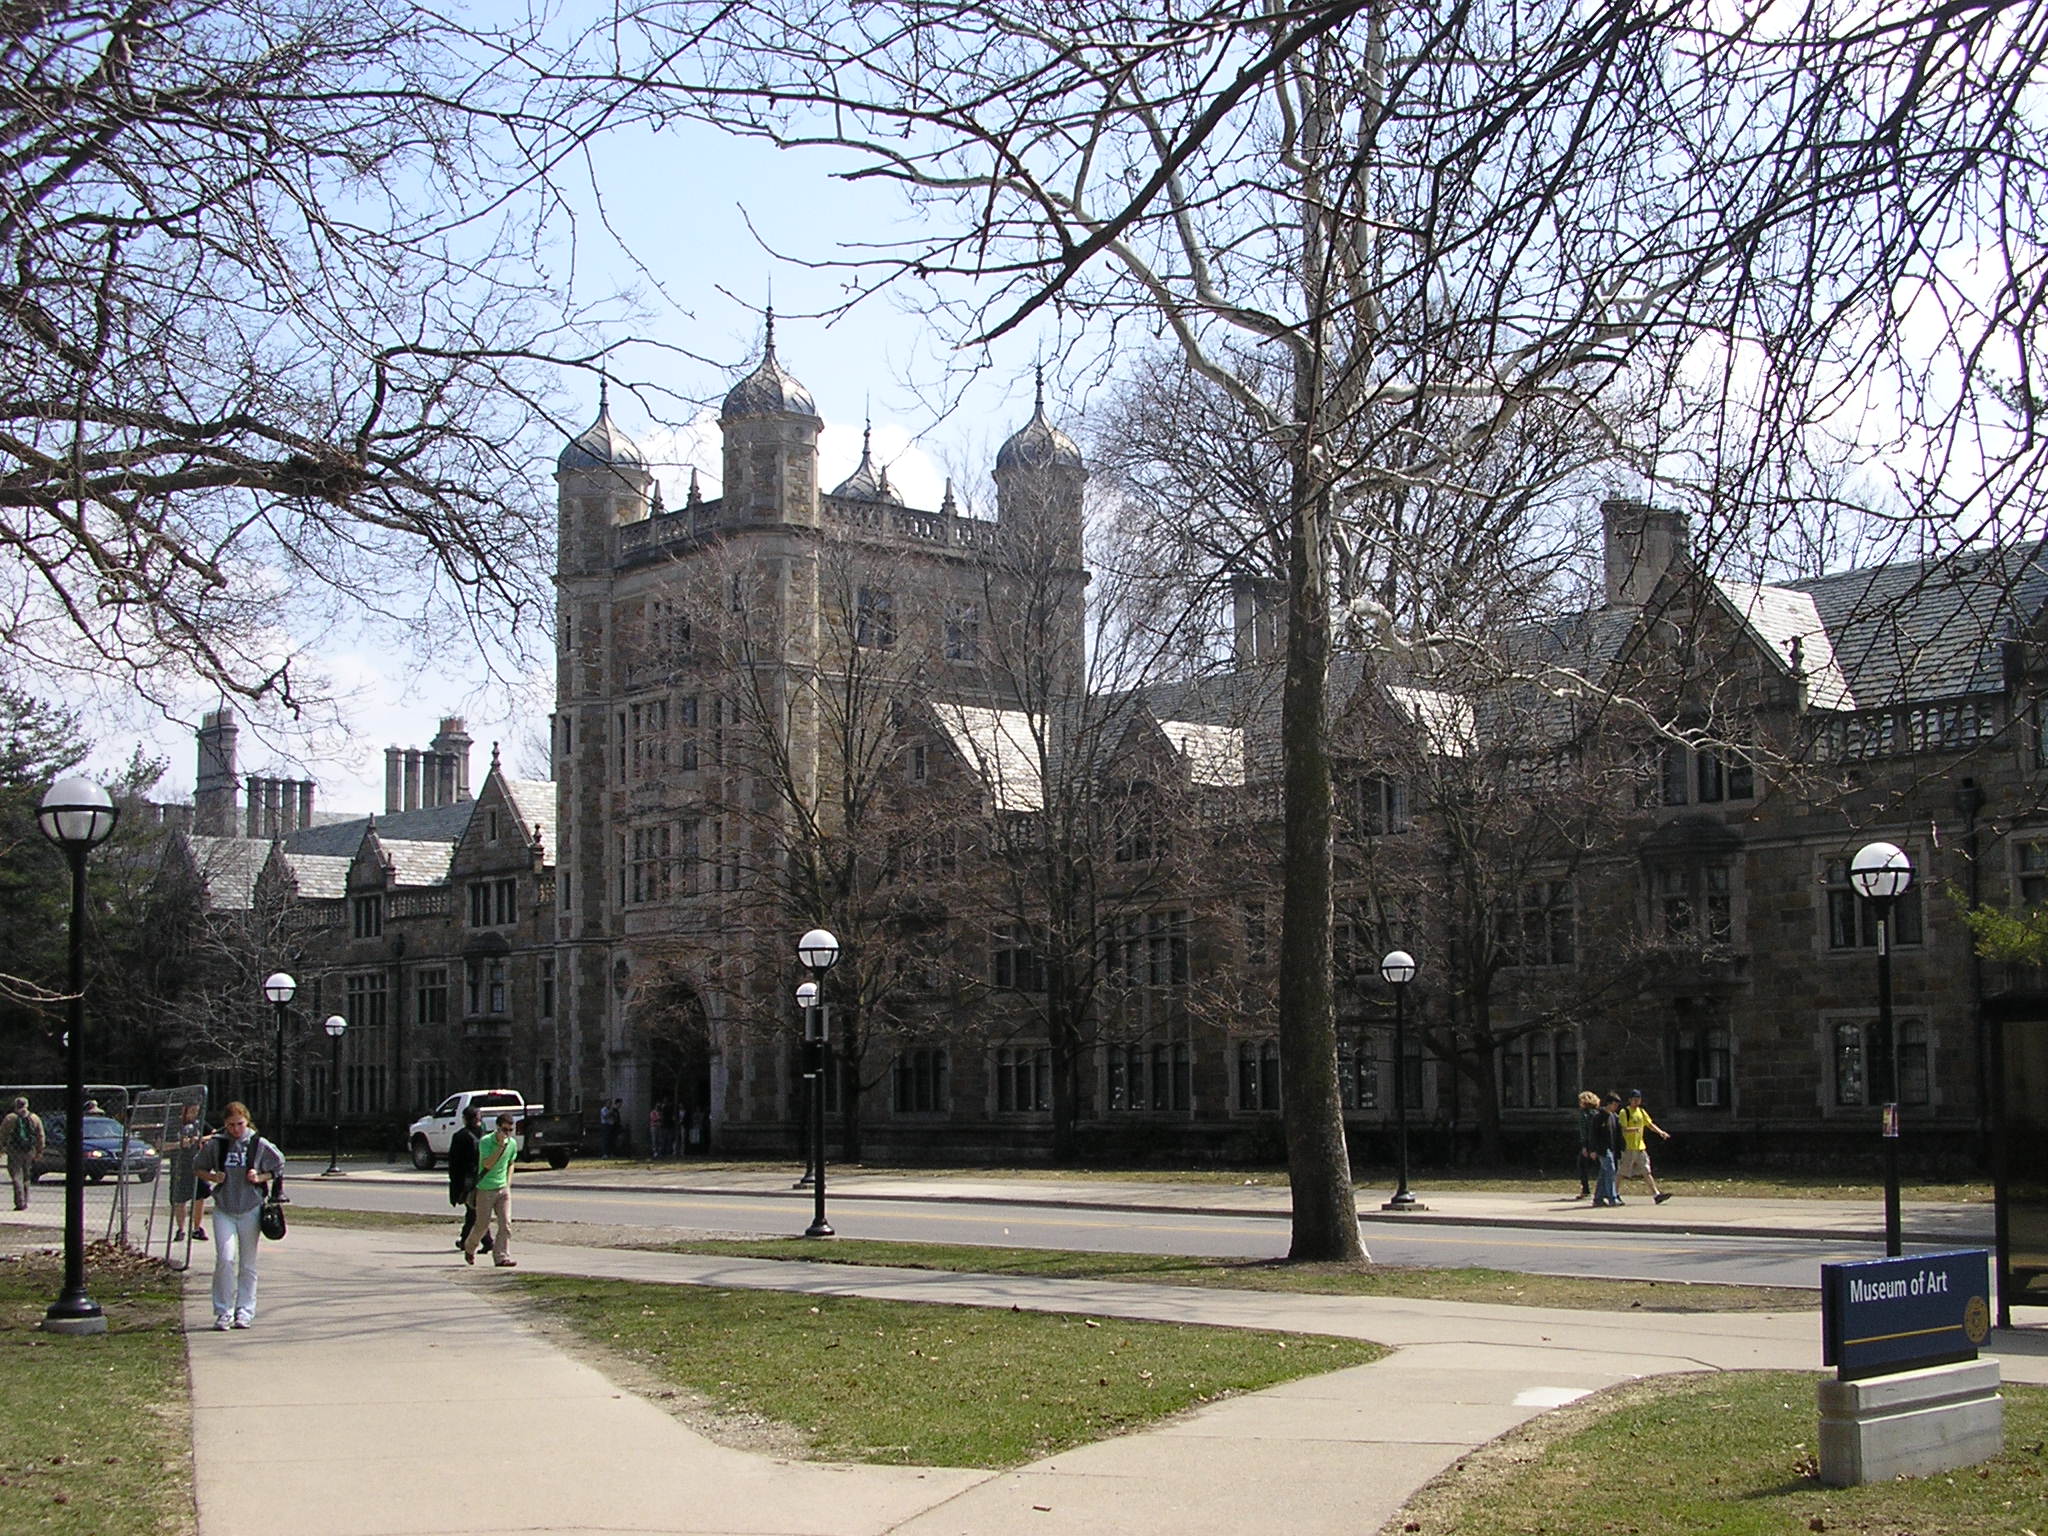 University of Michigan campus in Ann Arbor, Michigan